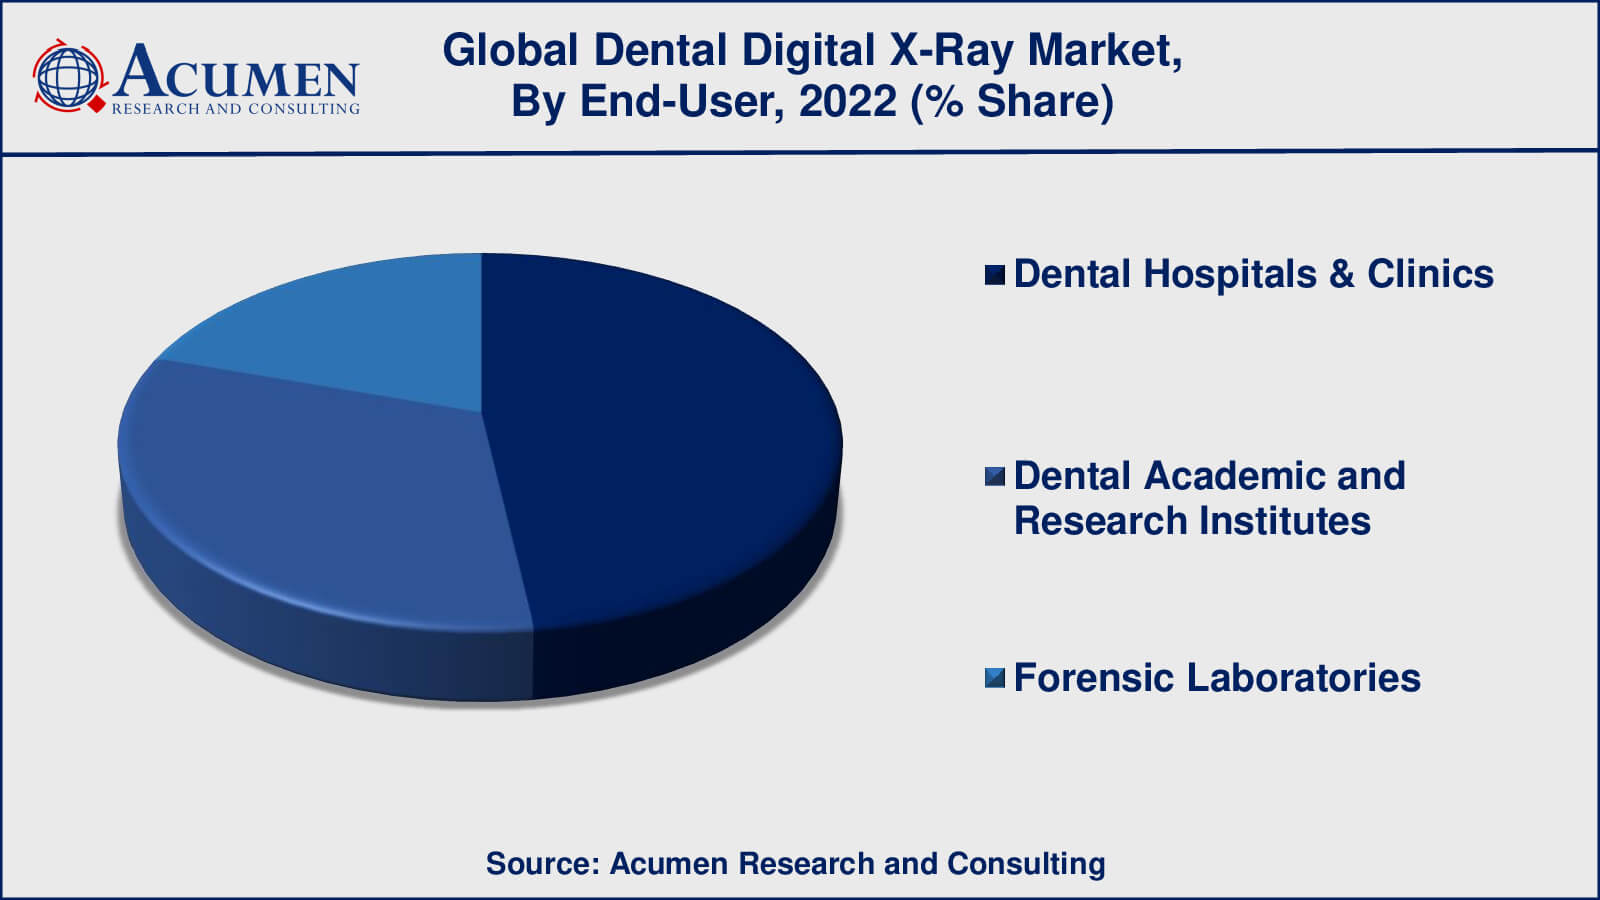 Dental Digital X-Ray Market Drivers